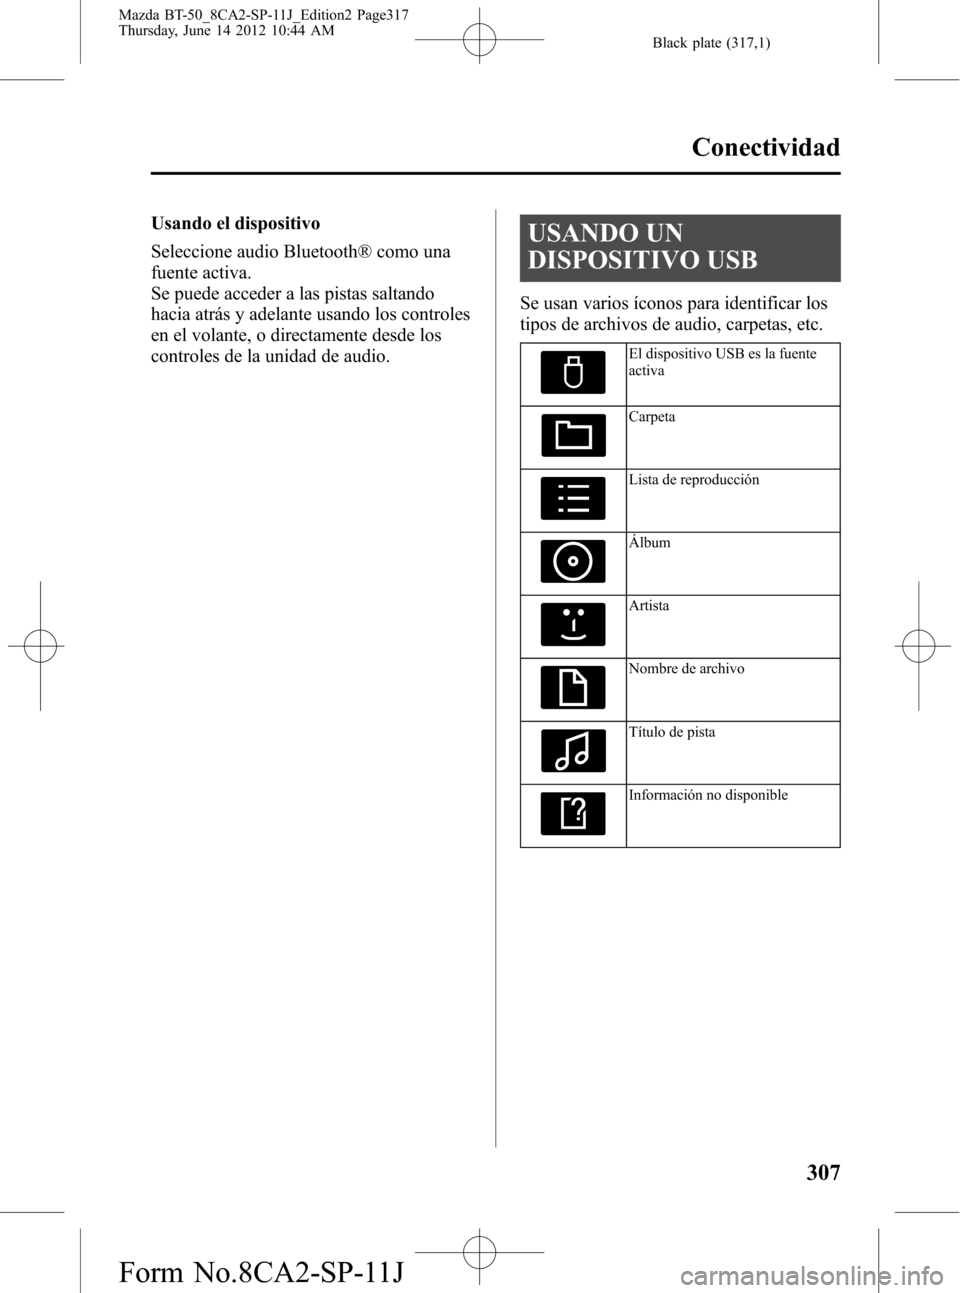 MAZDA MODEL BT-50 2014  Manual del propietario (in Spanish) Black plate (317,1)
Usando el dispositivo
Seleccione audio Bluetooth® como una
fuente activa.
Se puede acceder a las pistas saltando
hacia atrás y adelante usando los controles
en el volante, o dire